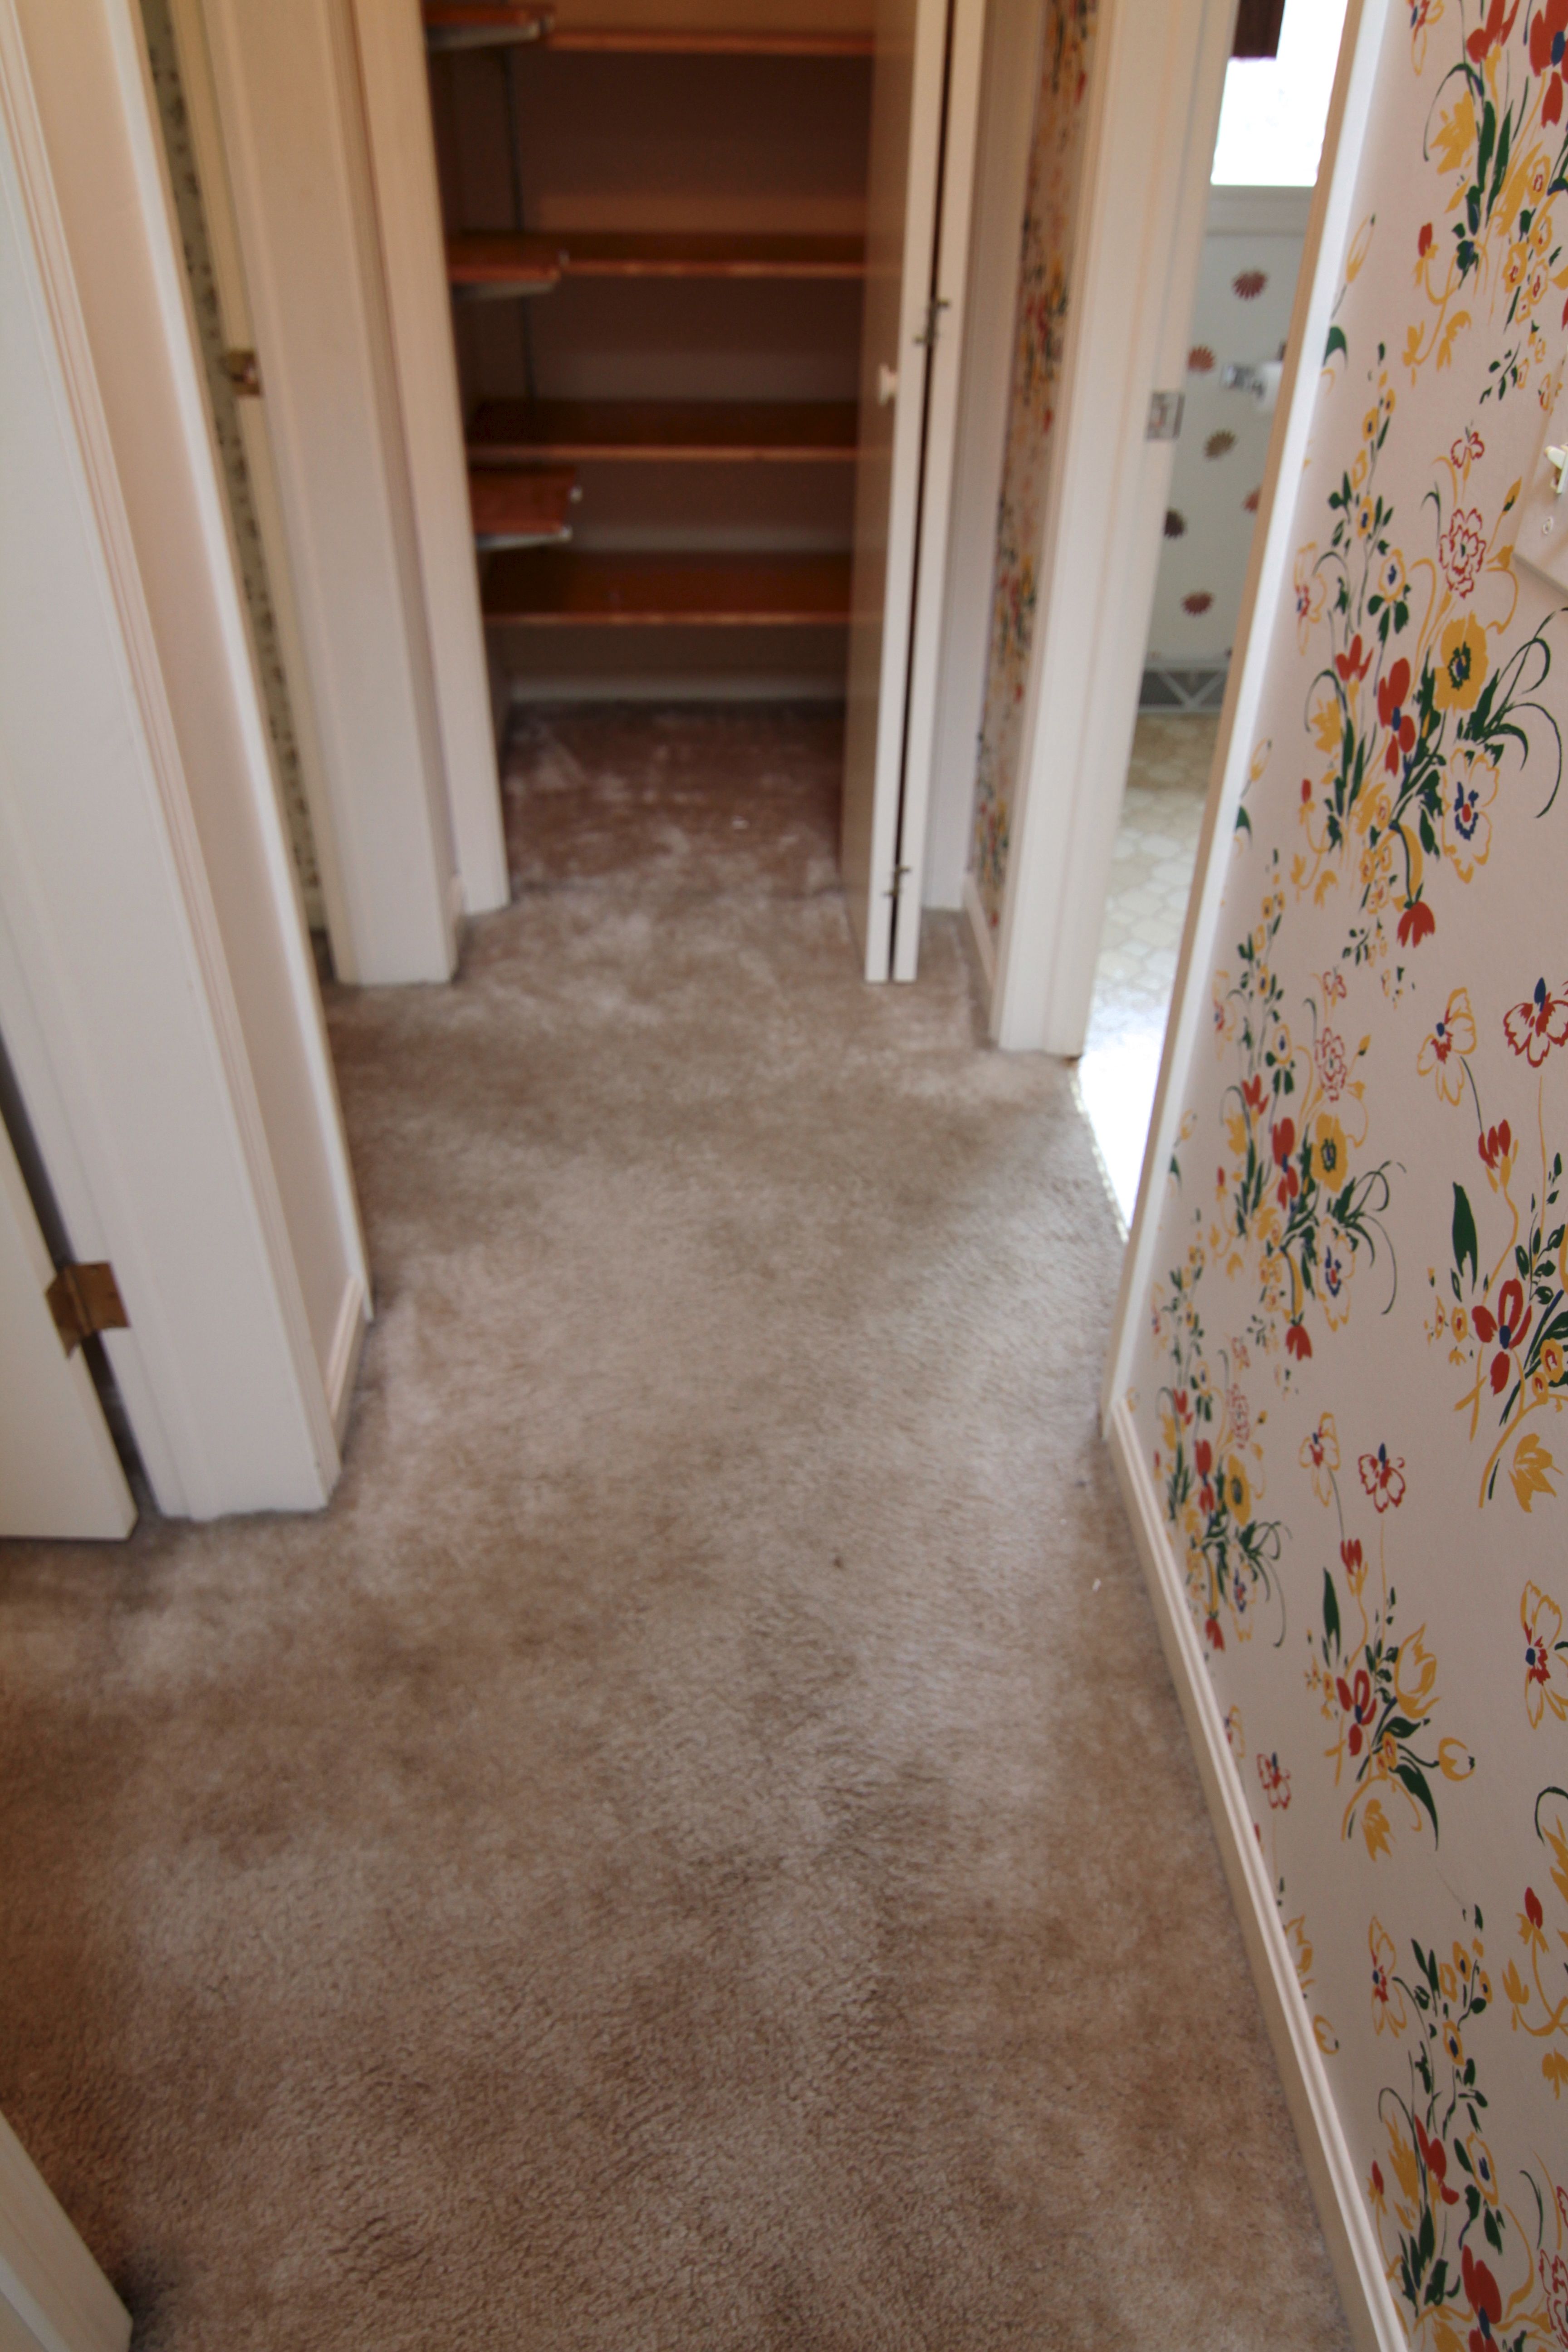 BEFORE: Carpet, wallpaper, old, gross.